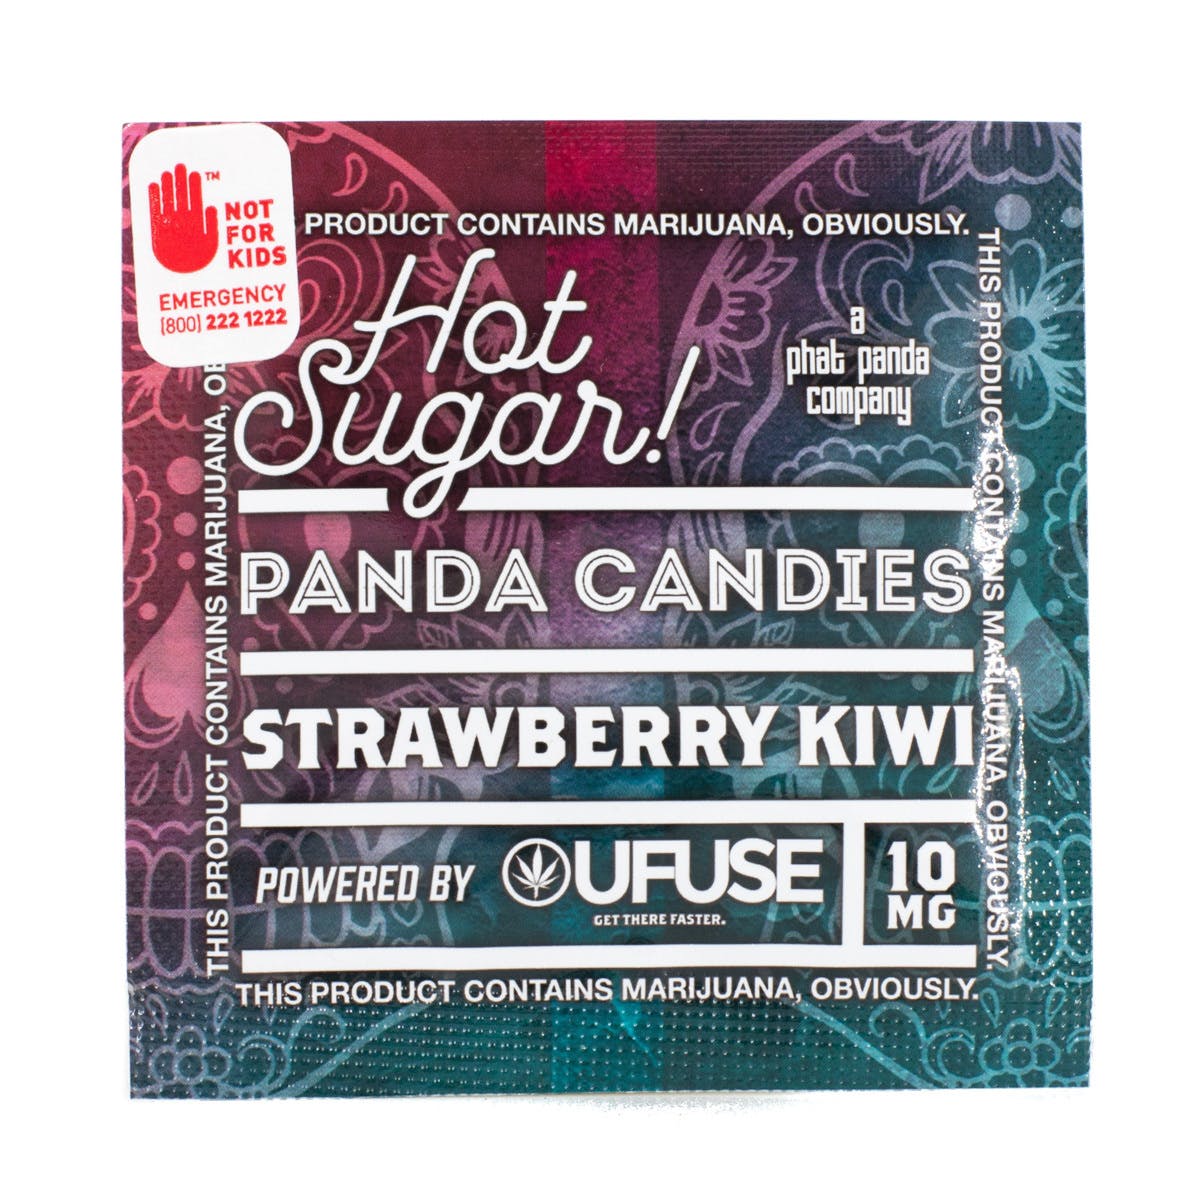 Strawberry Kiwi Panda Candies 10mg